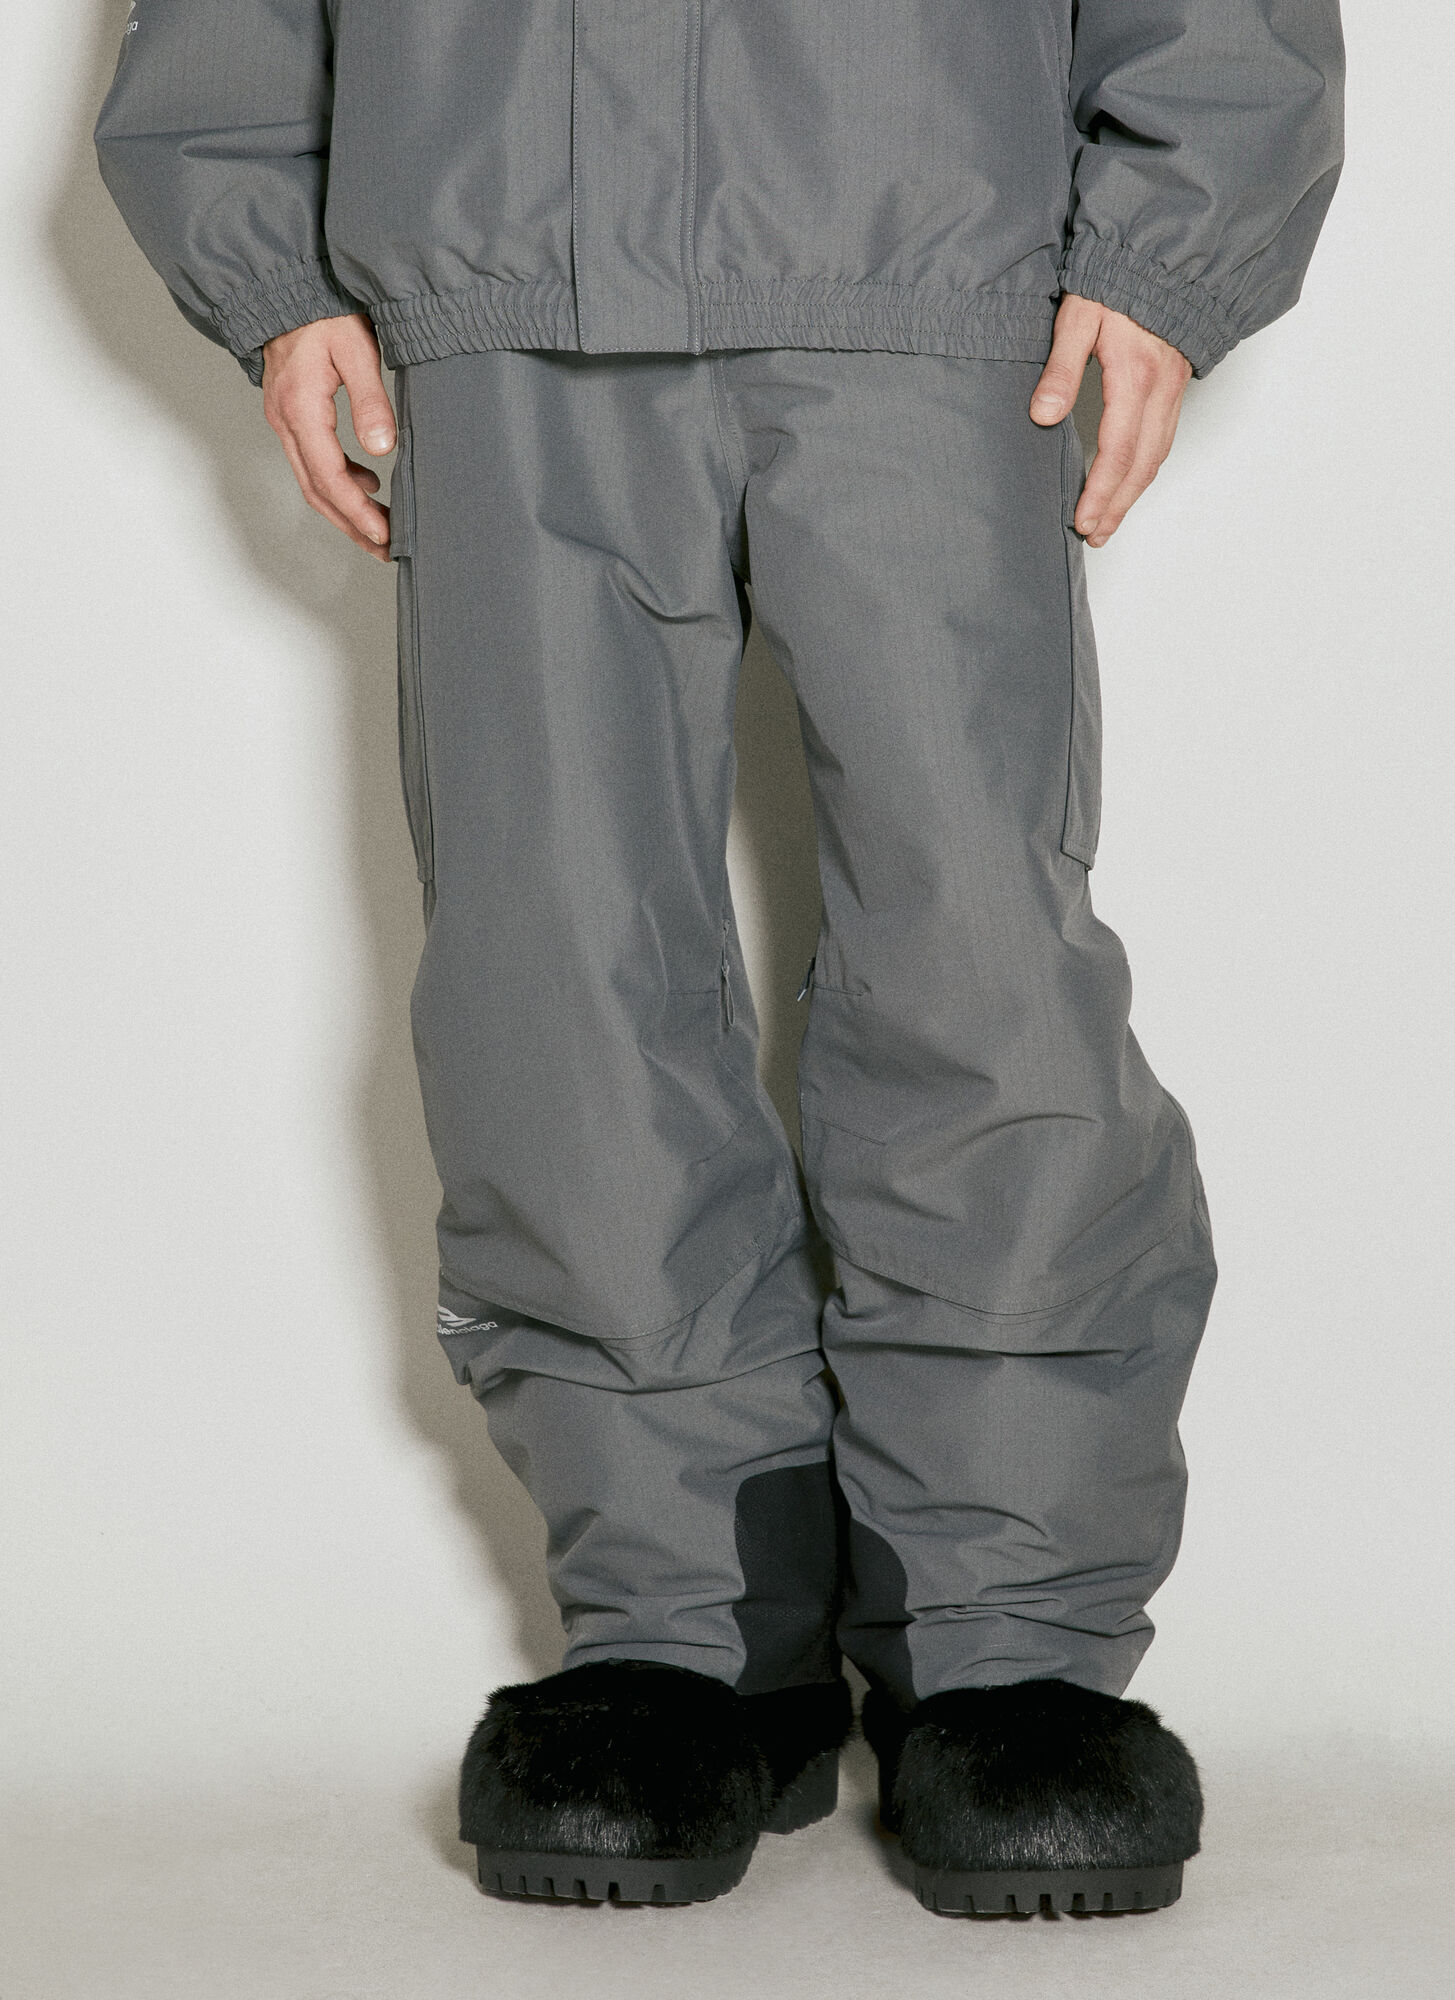 Balenciaga - Man Pants Eu - 48 In Gray